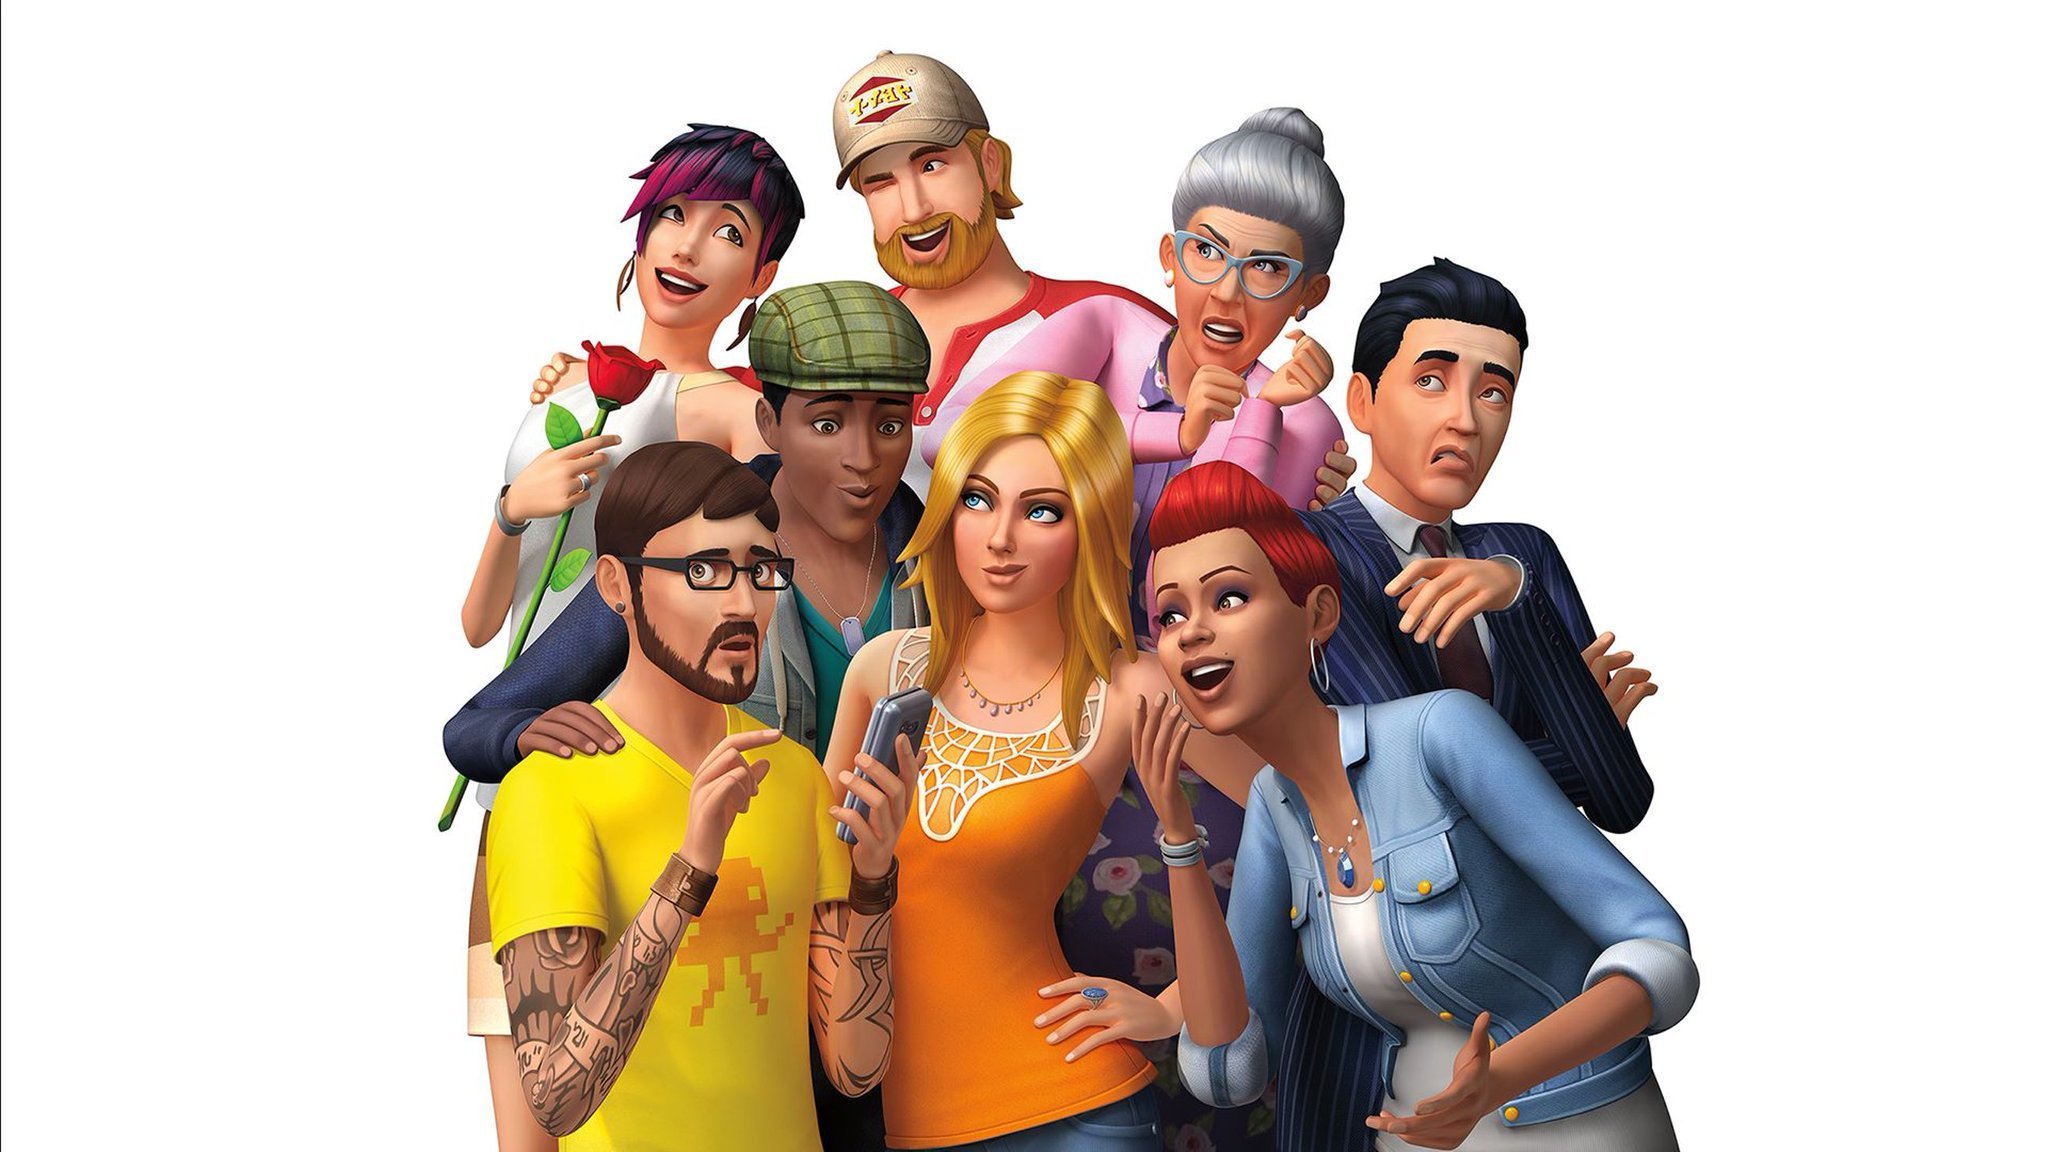 Trucos Los Sims 4 - PS4 - Claves, Guías